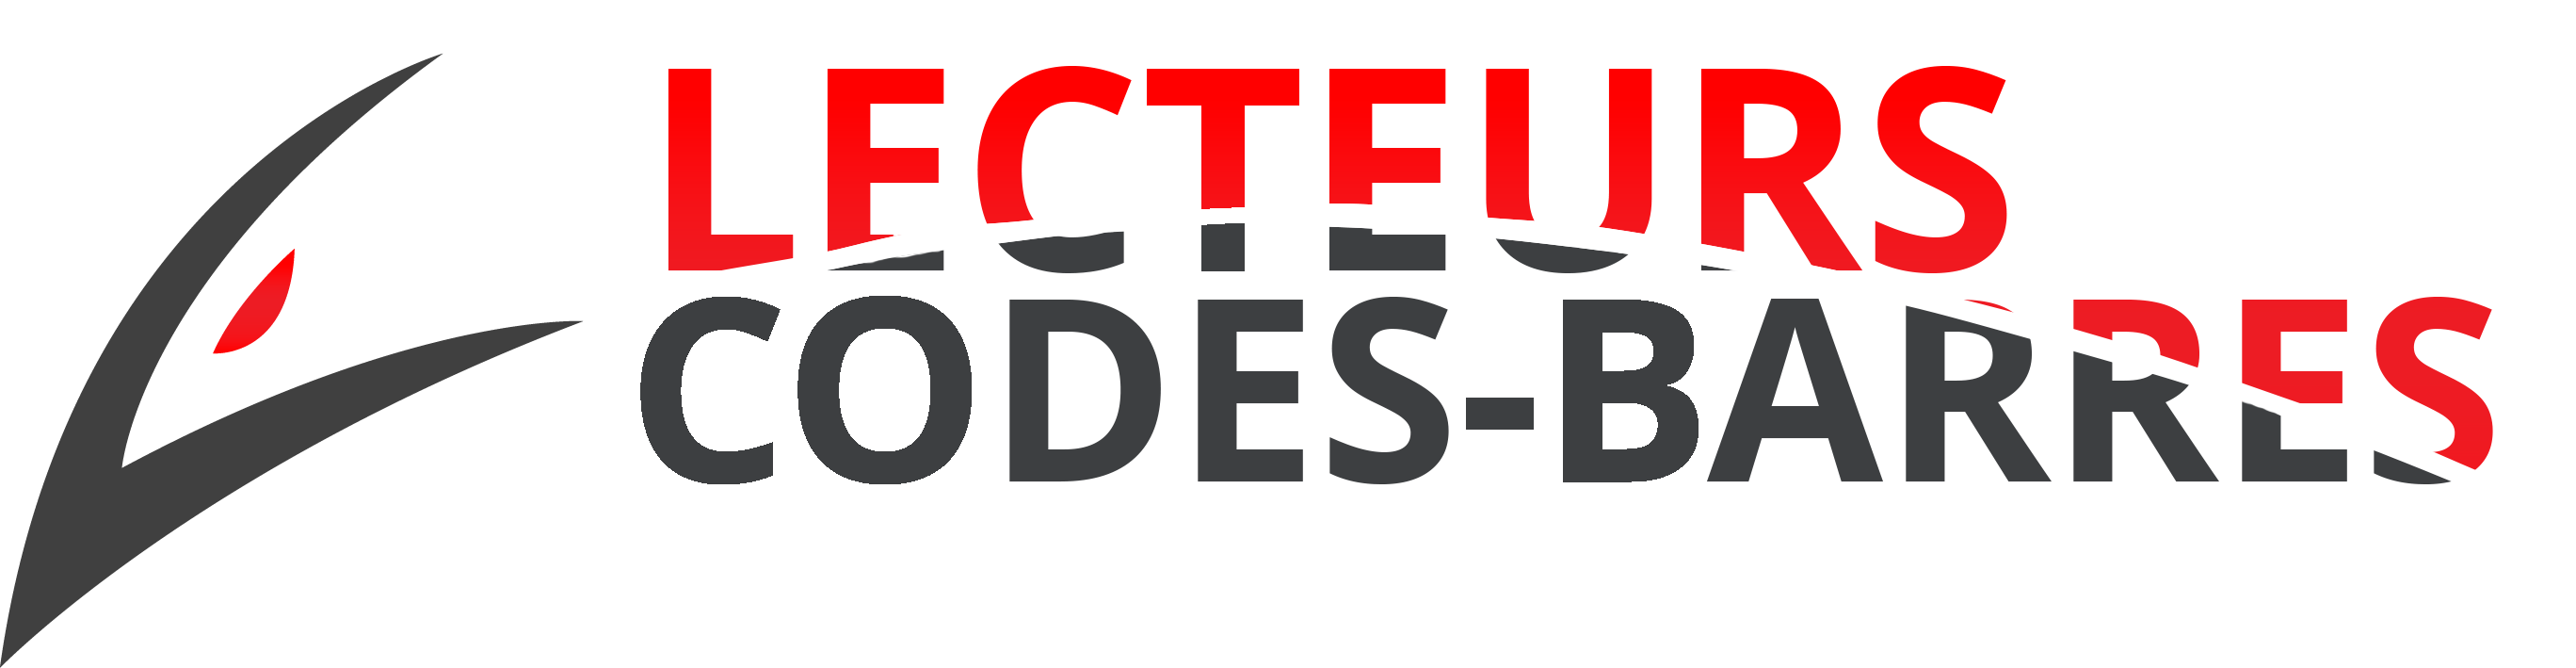 logo-lecteurs-code-barres